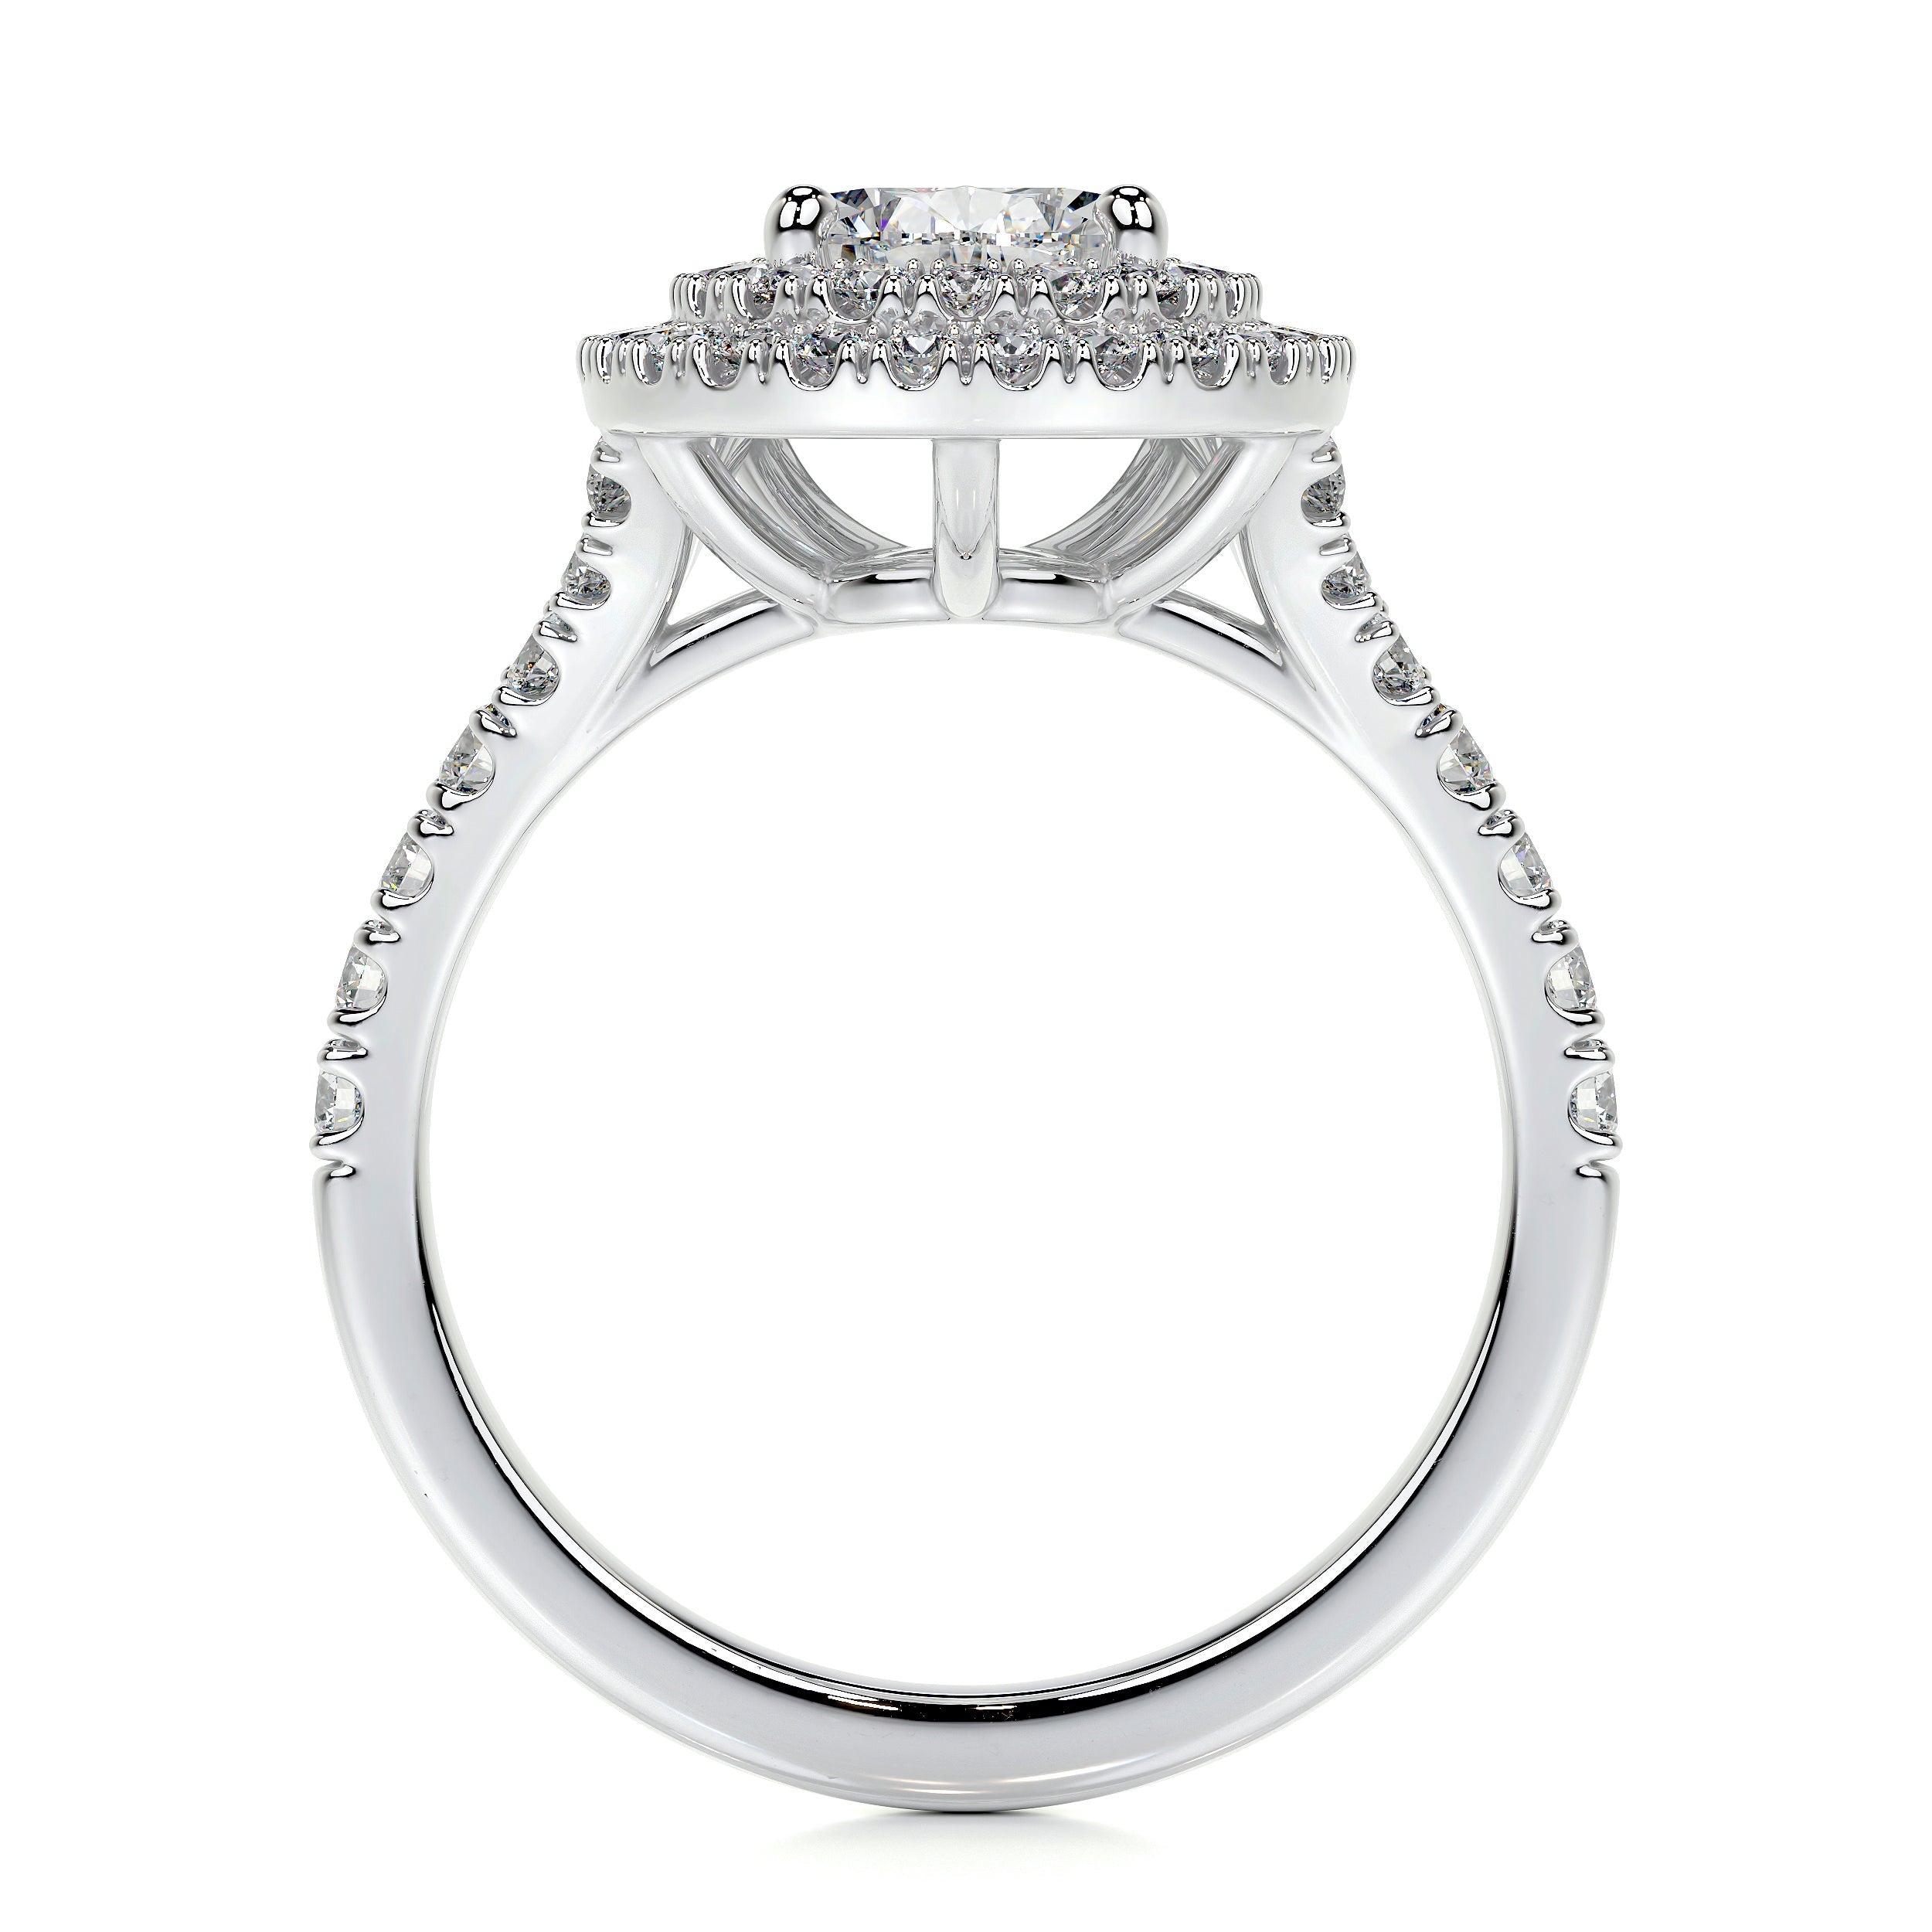 Melanie Lab Grown Diamond Ring   (1.75 Carat) -14K White Gold